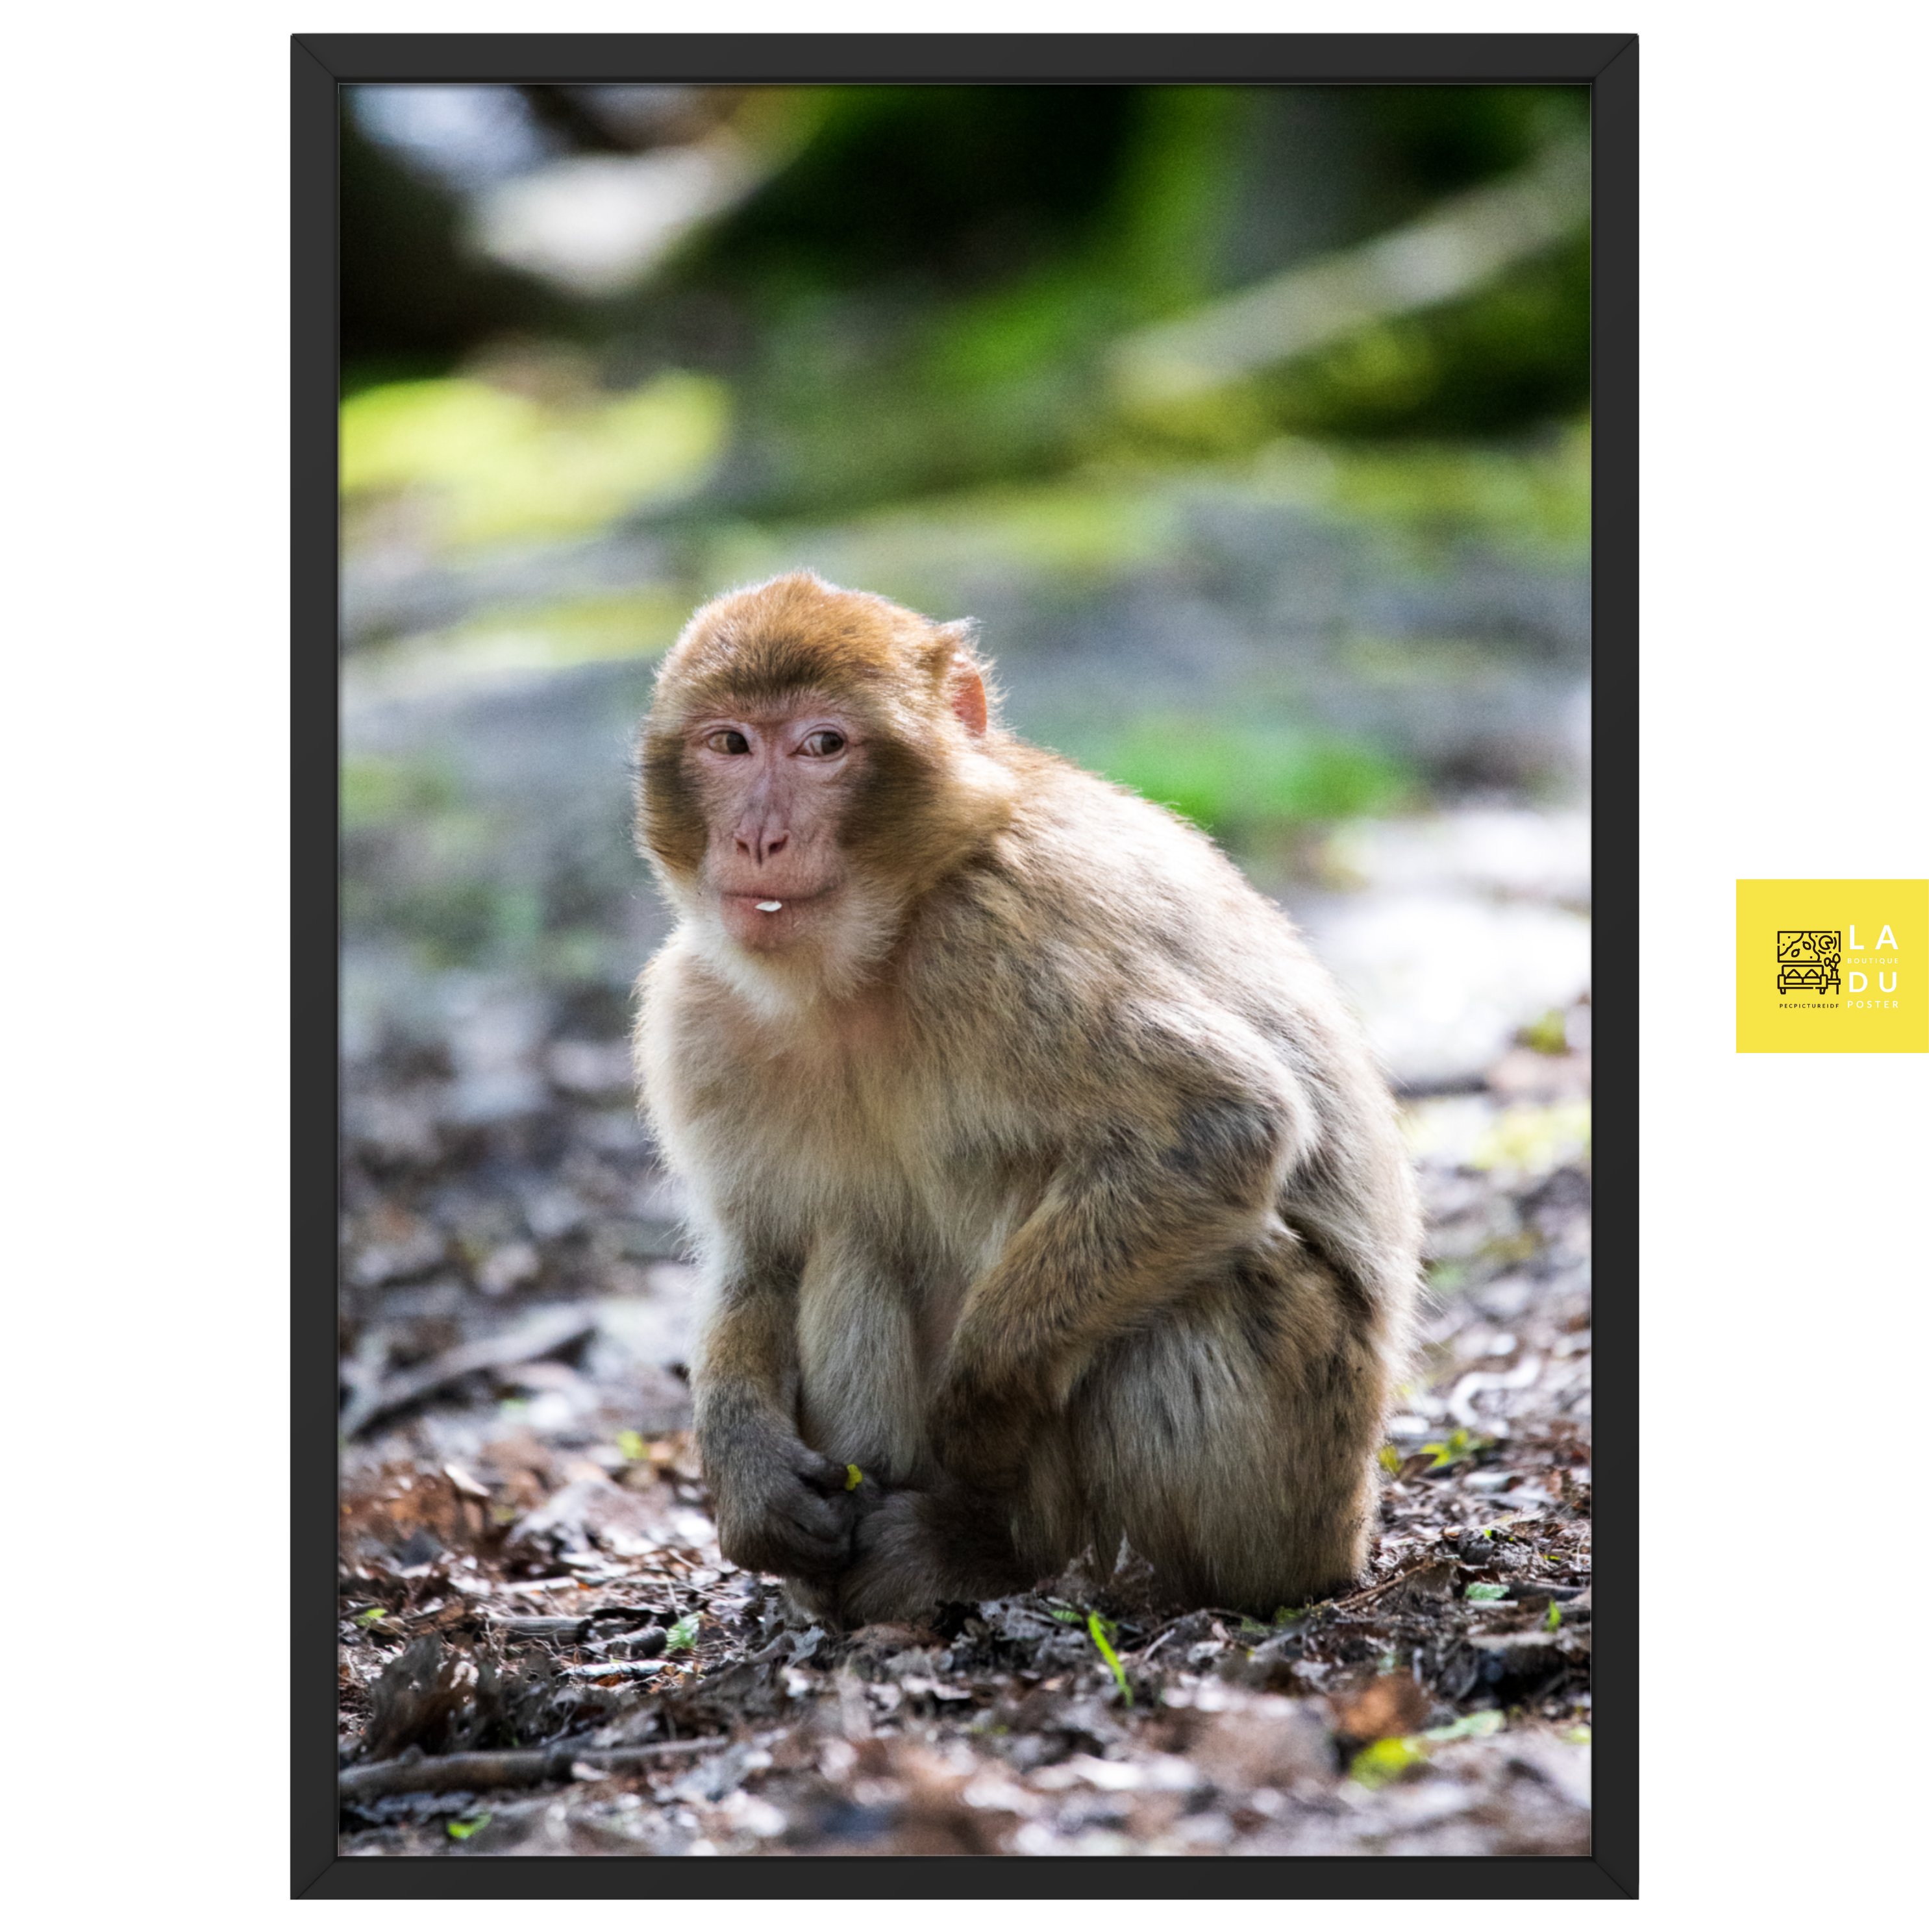 Photographie de macaque